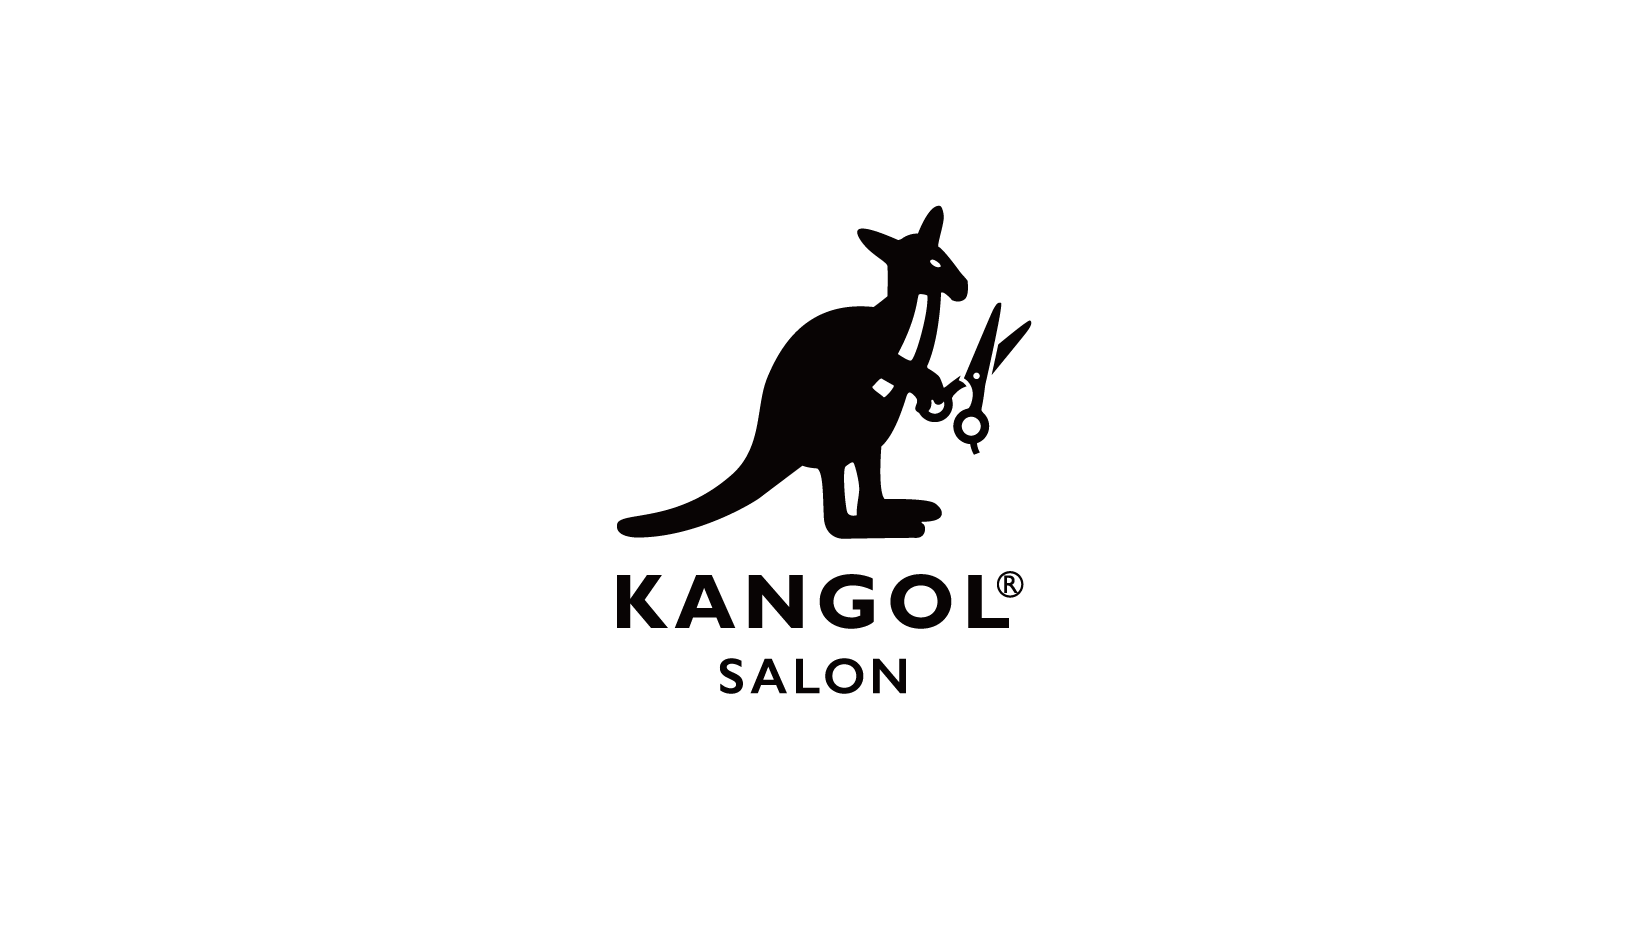 KANGOL SALON “KANGOL SALON TOKYO CENTRAL”